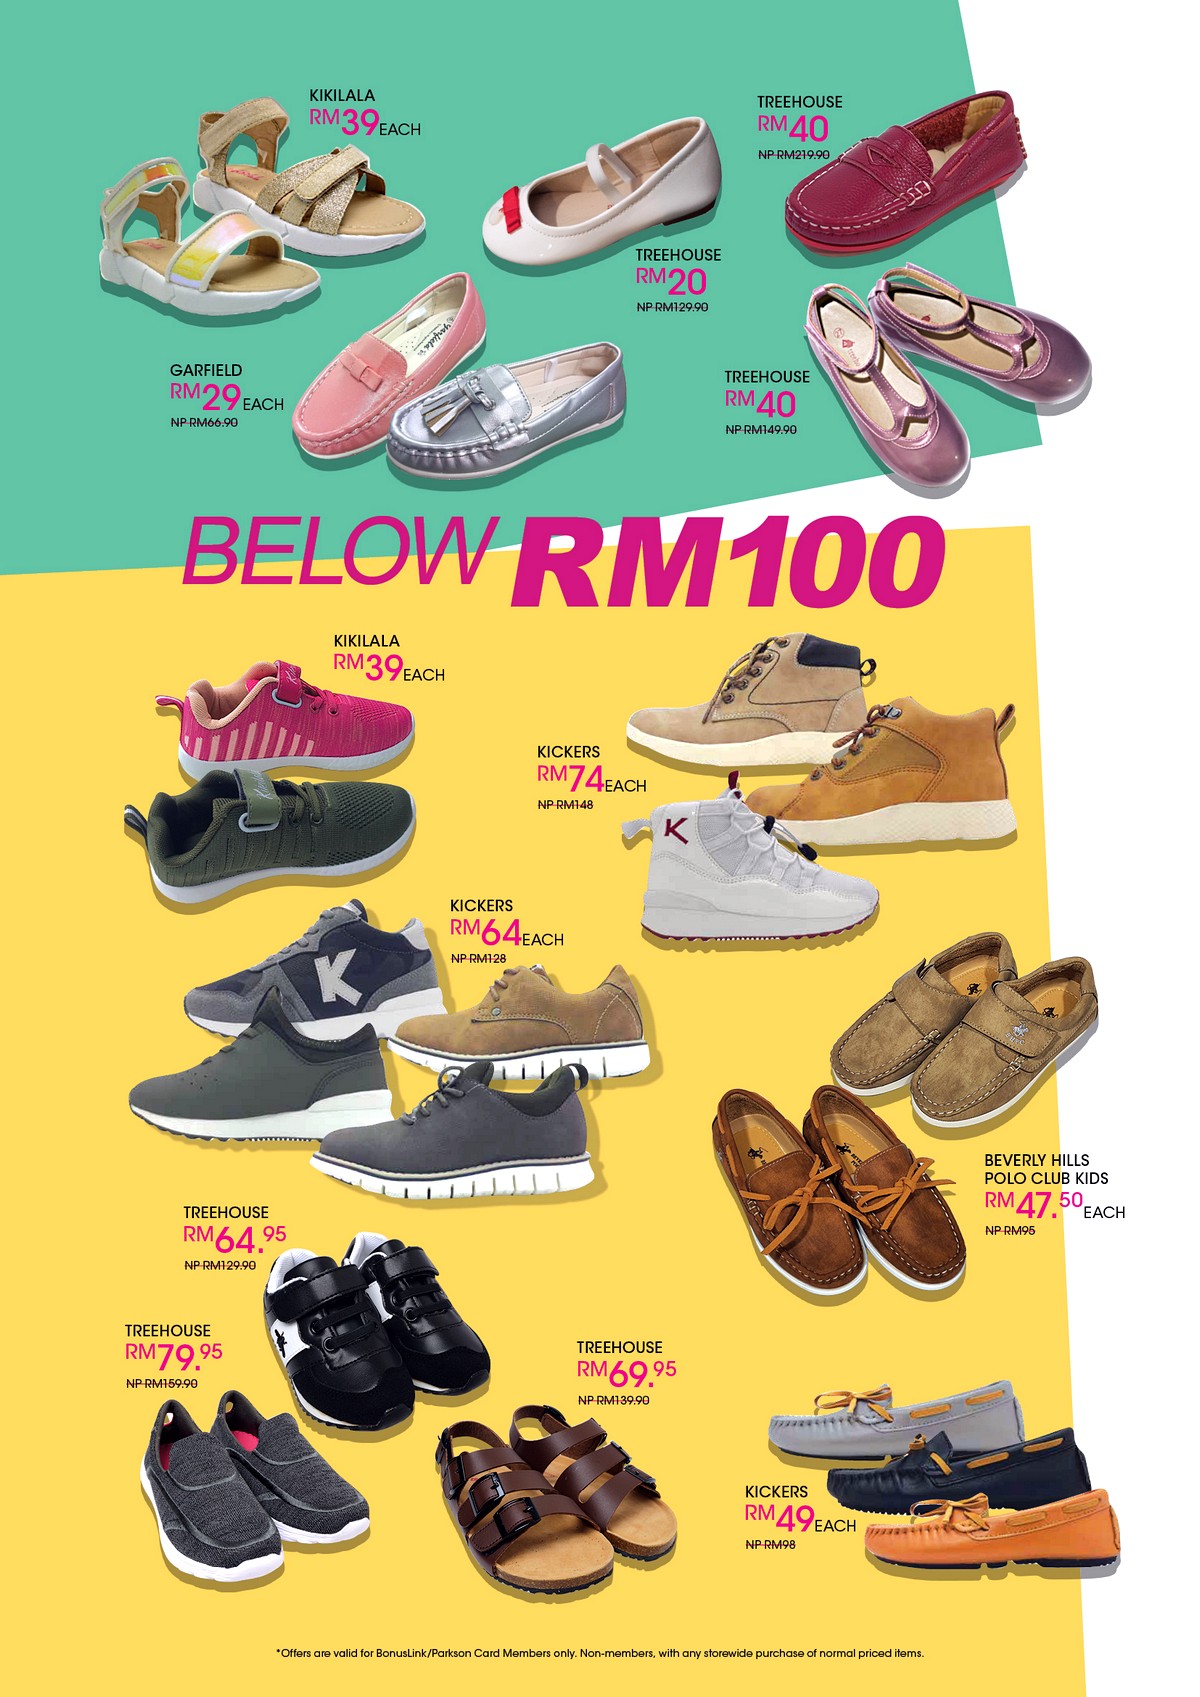 MAS-2020-FA14 - Fashion Lifestyle & Department Store Footwear Johor Kedah Kelantan Kuala Lumpur Melaka Nationwide Negeri Sembilan Pahang Penang Perak Perlis Putrajaya Sabah Sarawak Selangor Terengganu Warehouse Sale & Clearance in Malaysia 